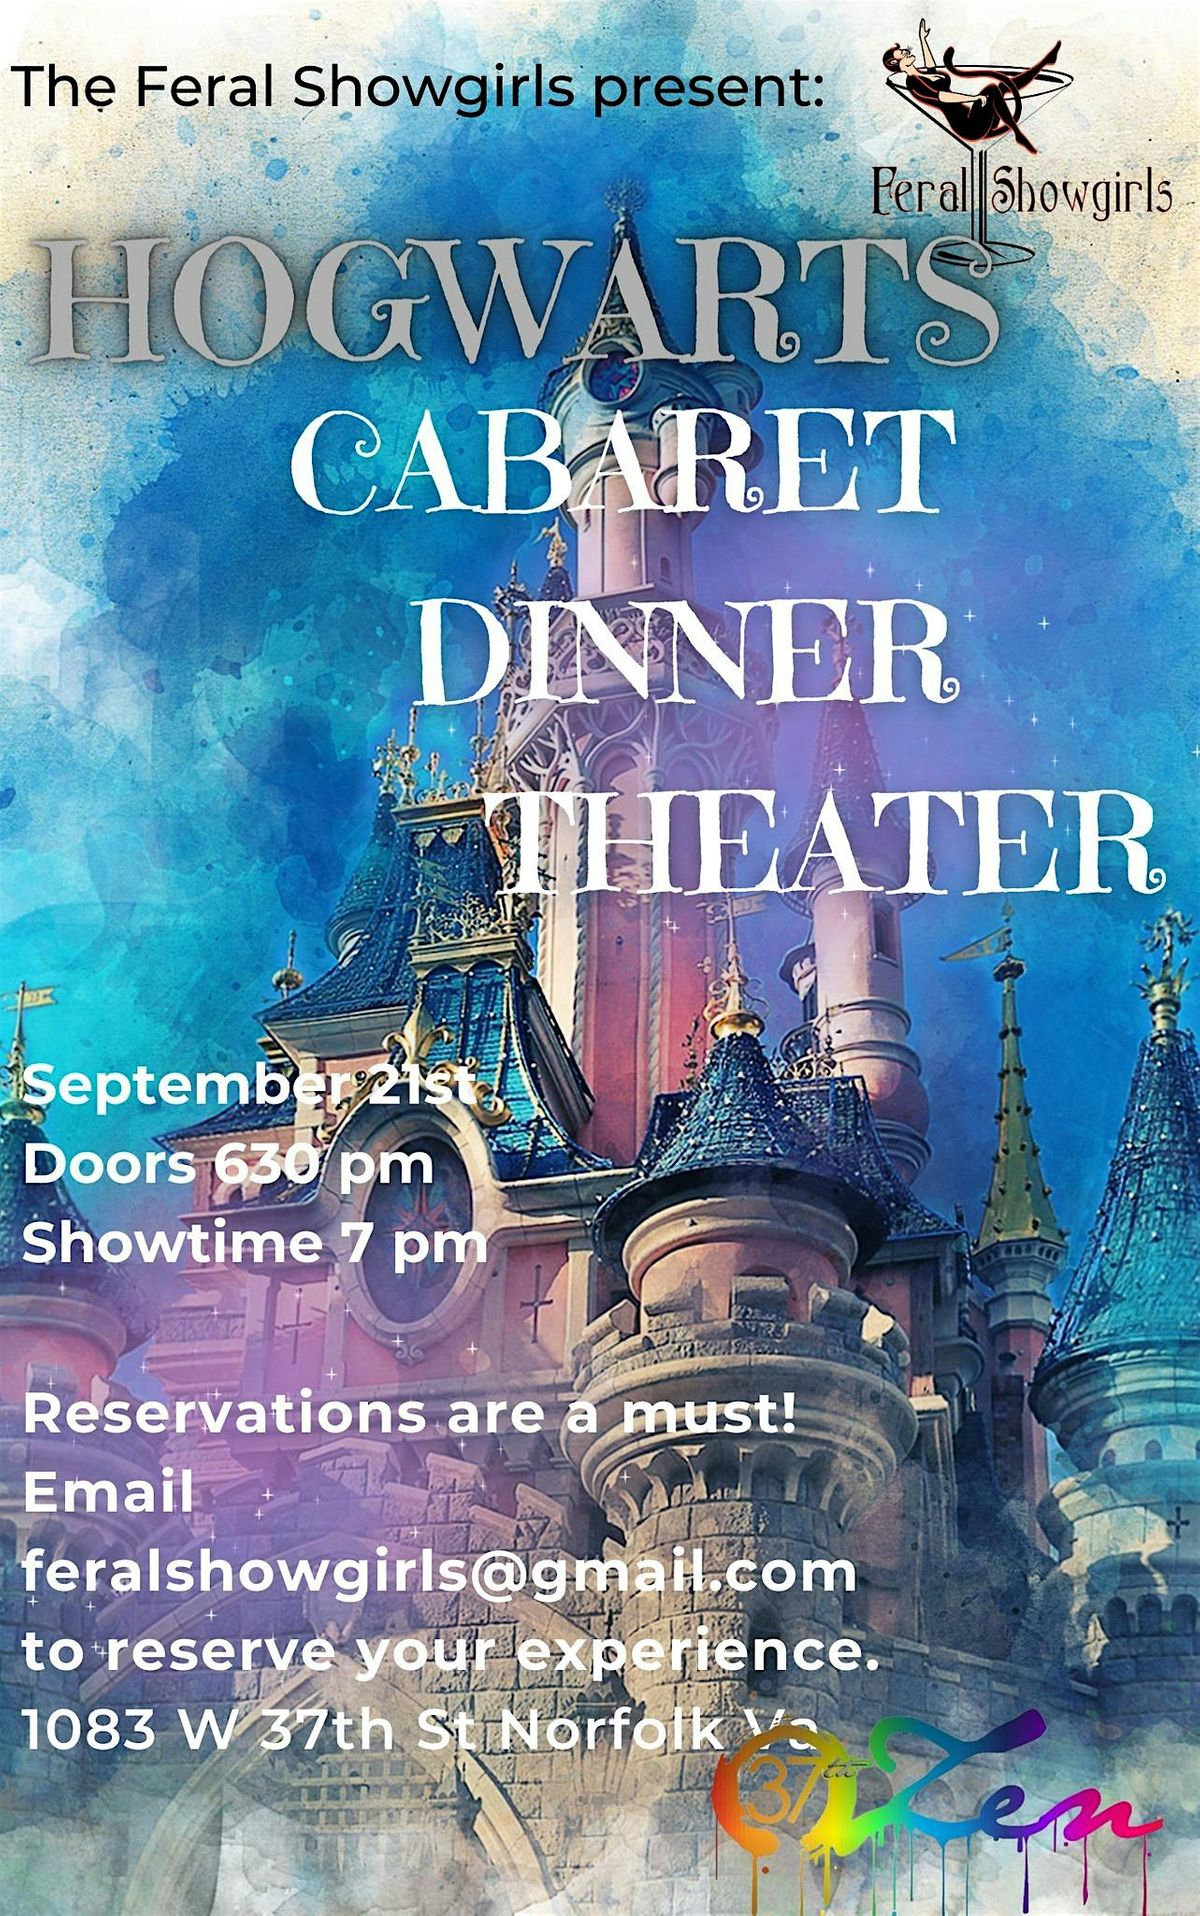 Cabaret Dinner Theater: Hogwart's Castle Edition!